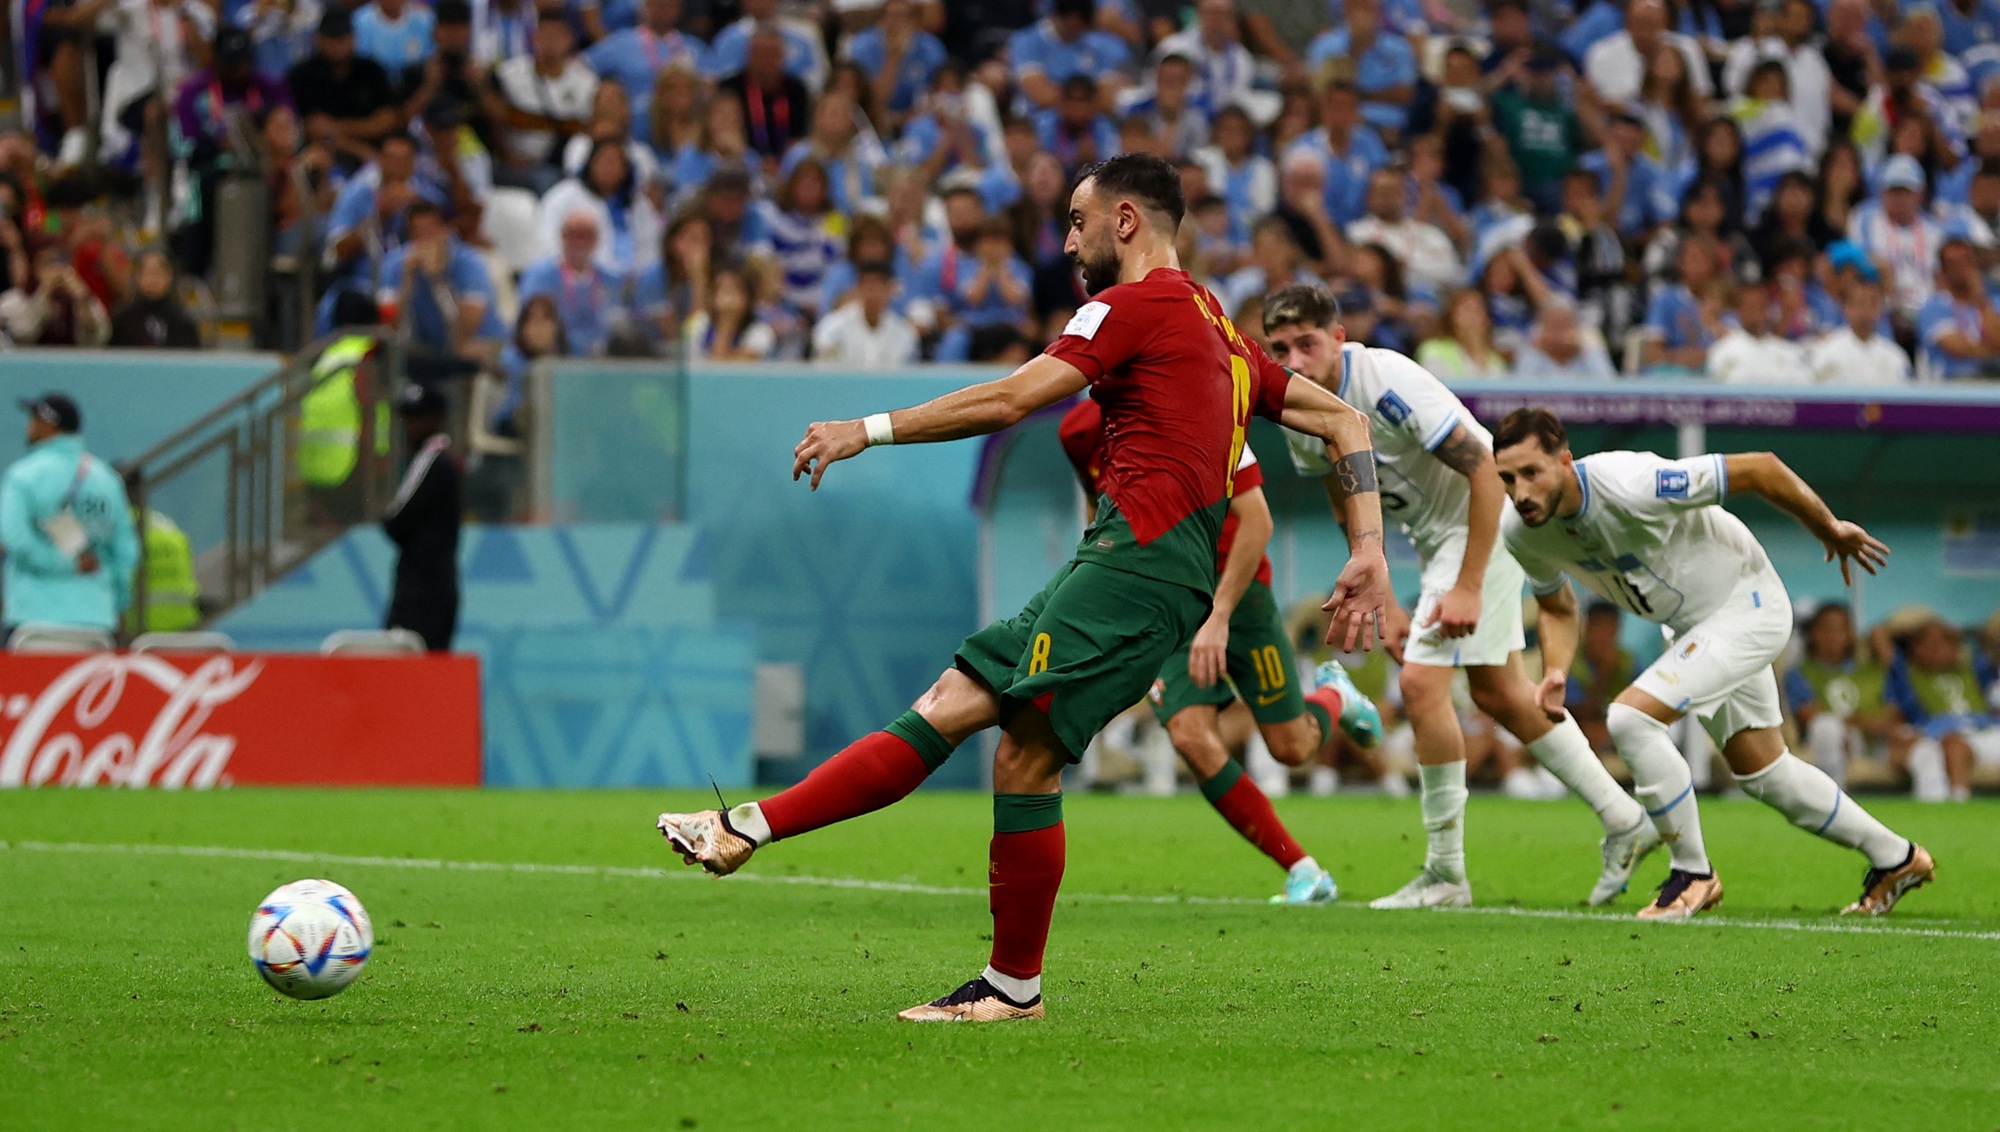 Sao Man United lập cú đúp, Bồ Đào Nha vượt qua vòng bảng - Ảnh 8.